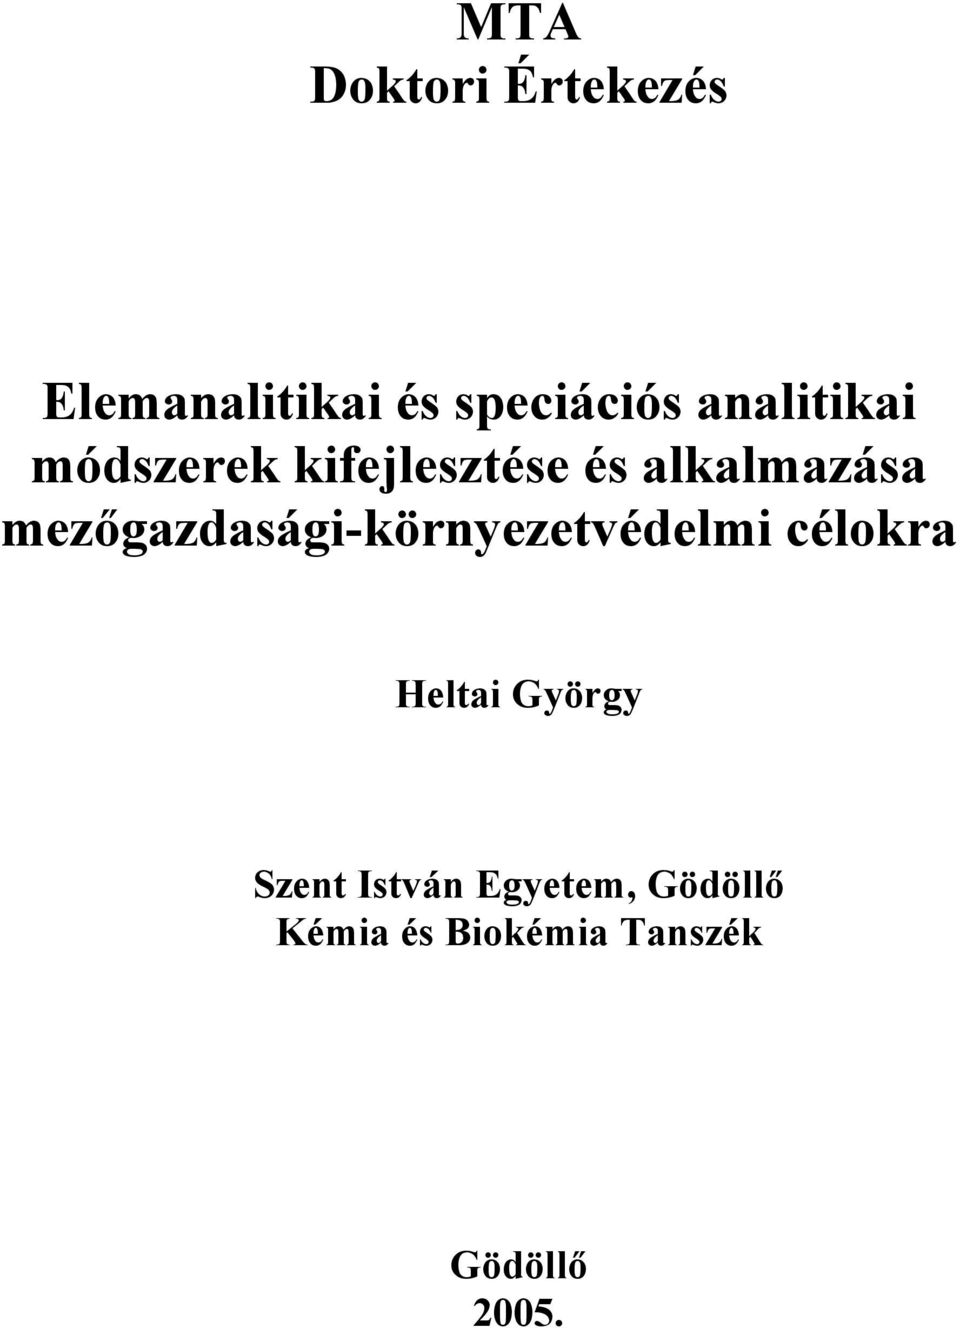 mezıgazdasági-környezetvédelmi célokra Heltai György